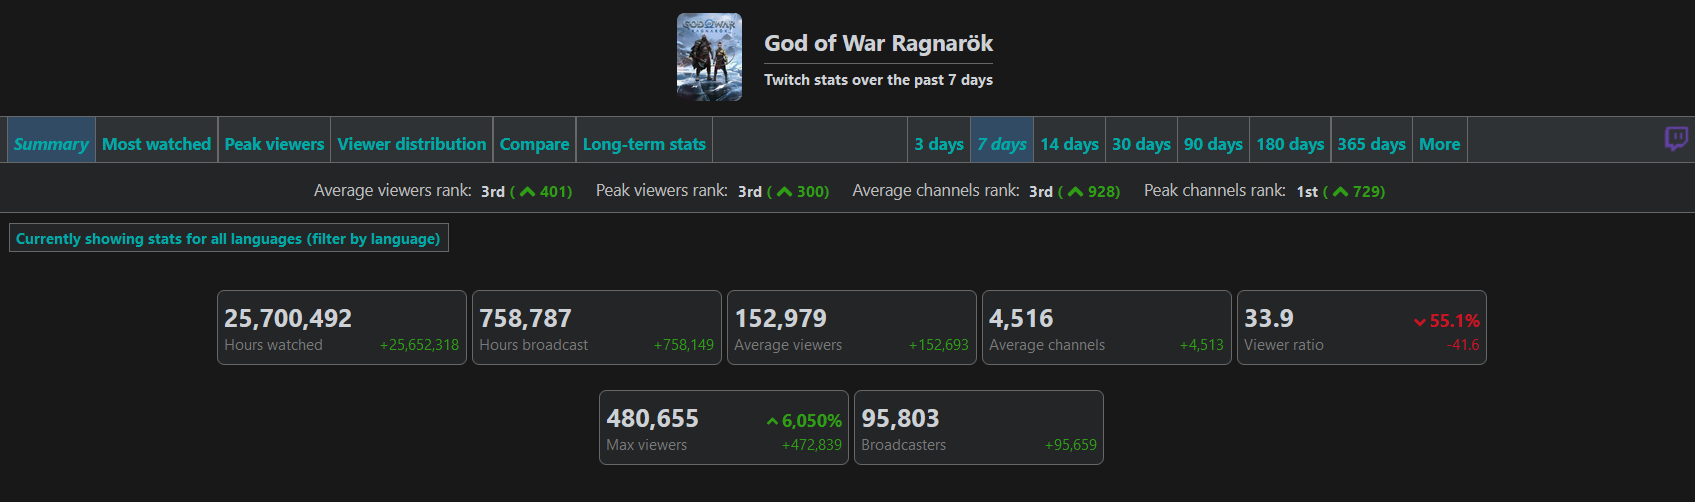 480 тысяч зрителей и 22 миллиона часов просмотра: статистика God of War Ragnarok на Twitch показывает интерес фанатов к игре-2